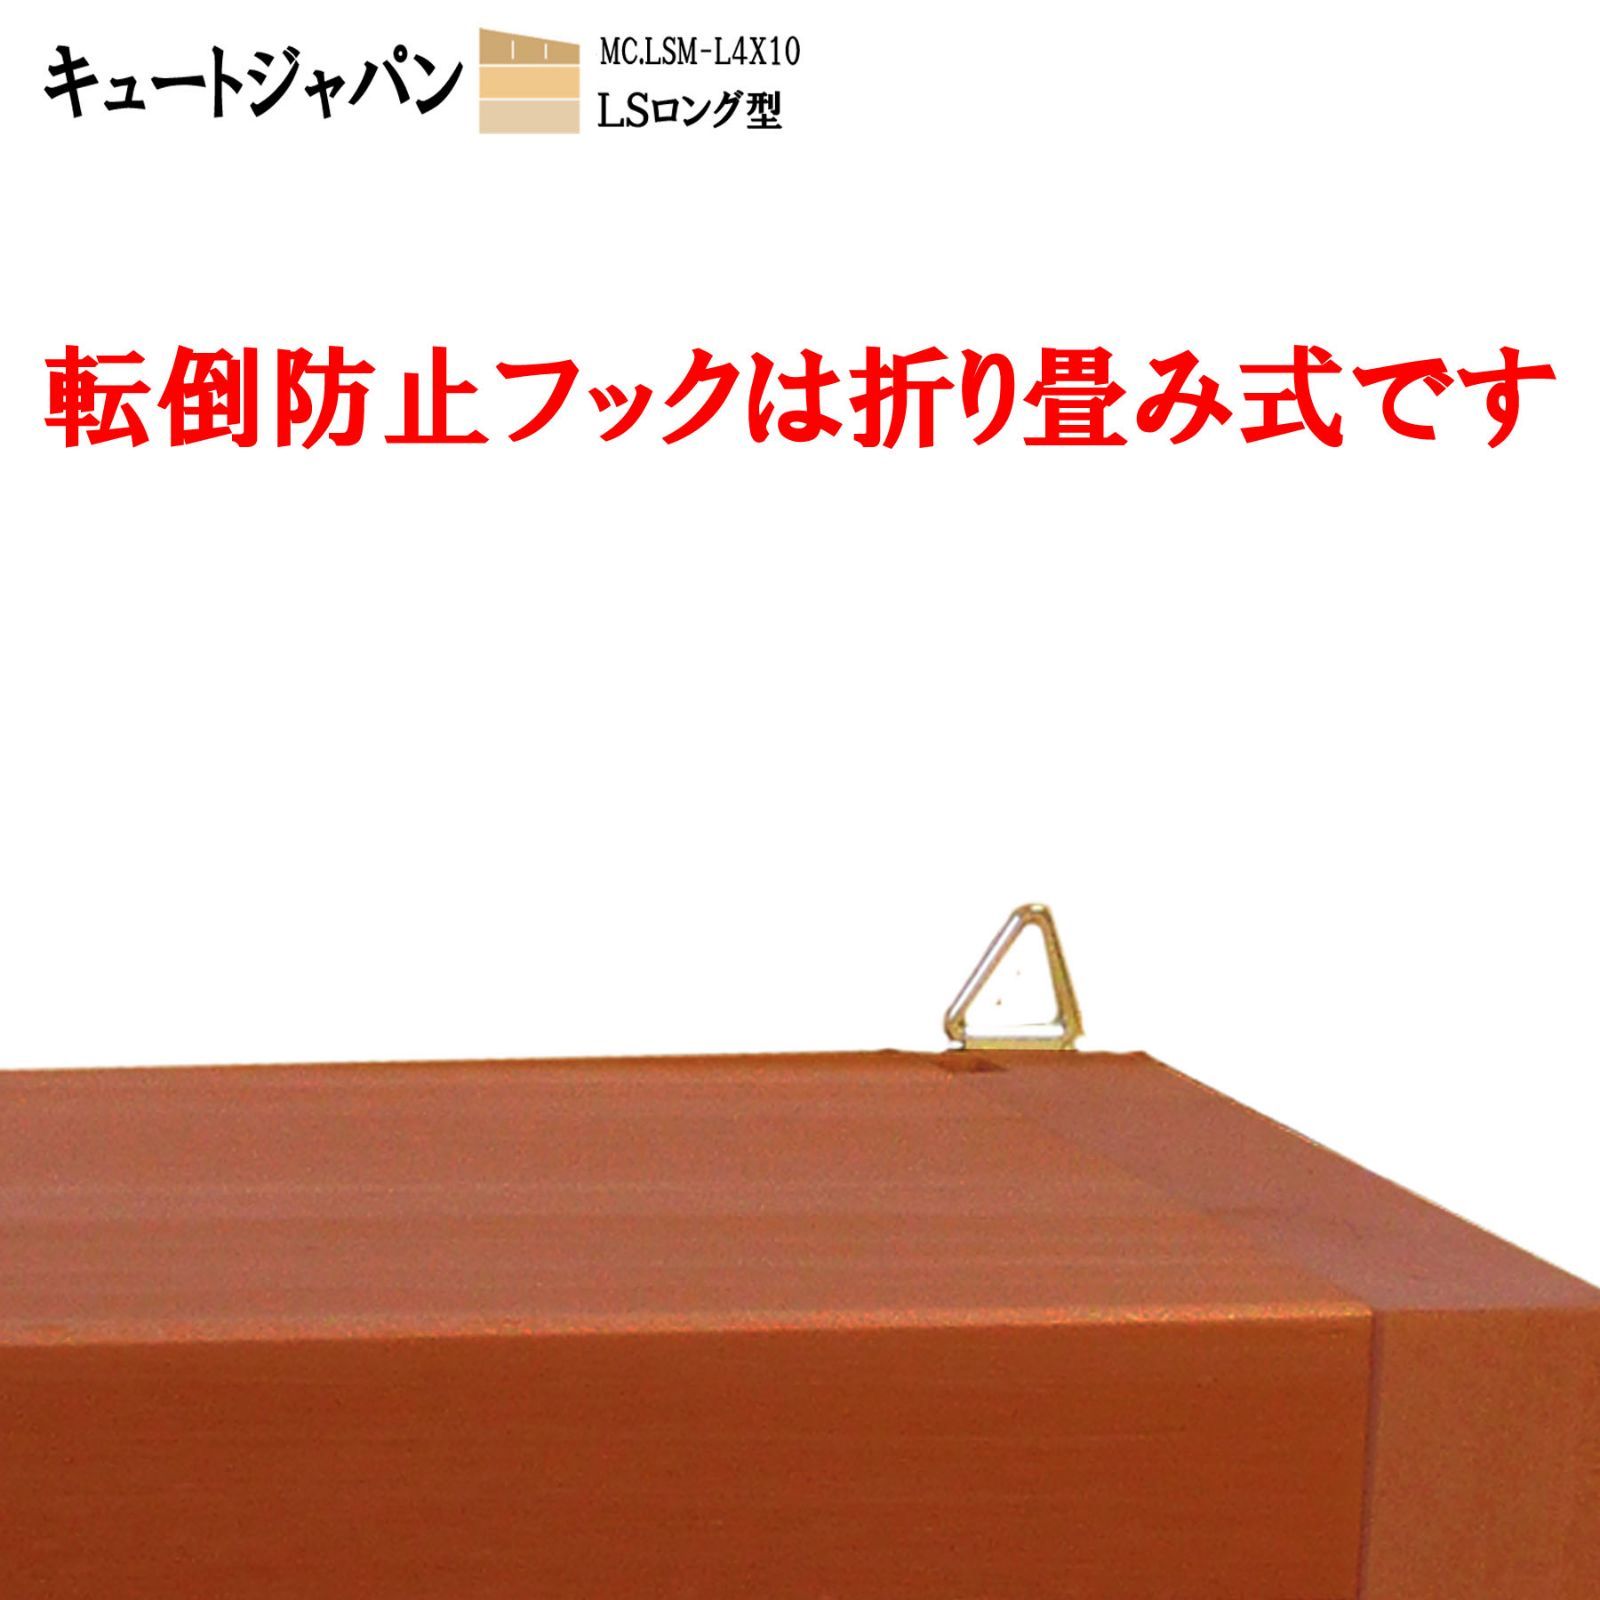 Ｎゲージ・トミカロング対応ケース アクリル障子付 日本製 マホガニ色 